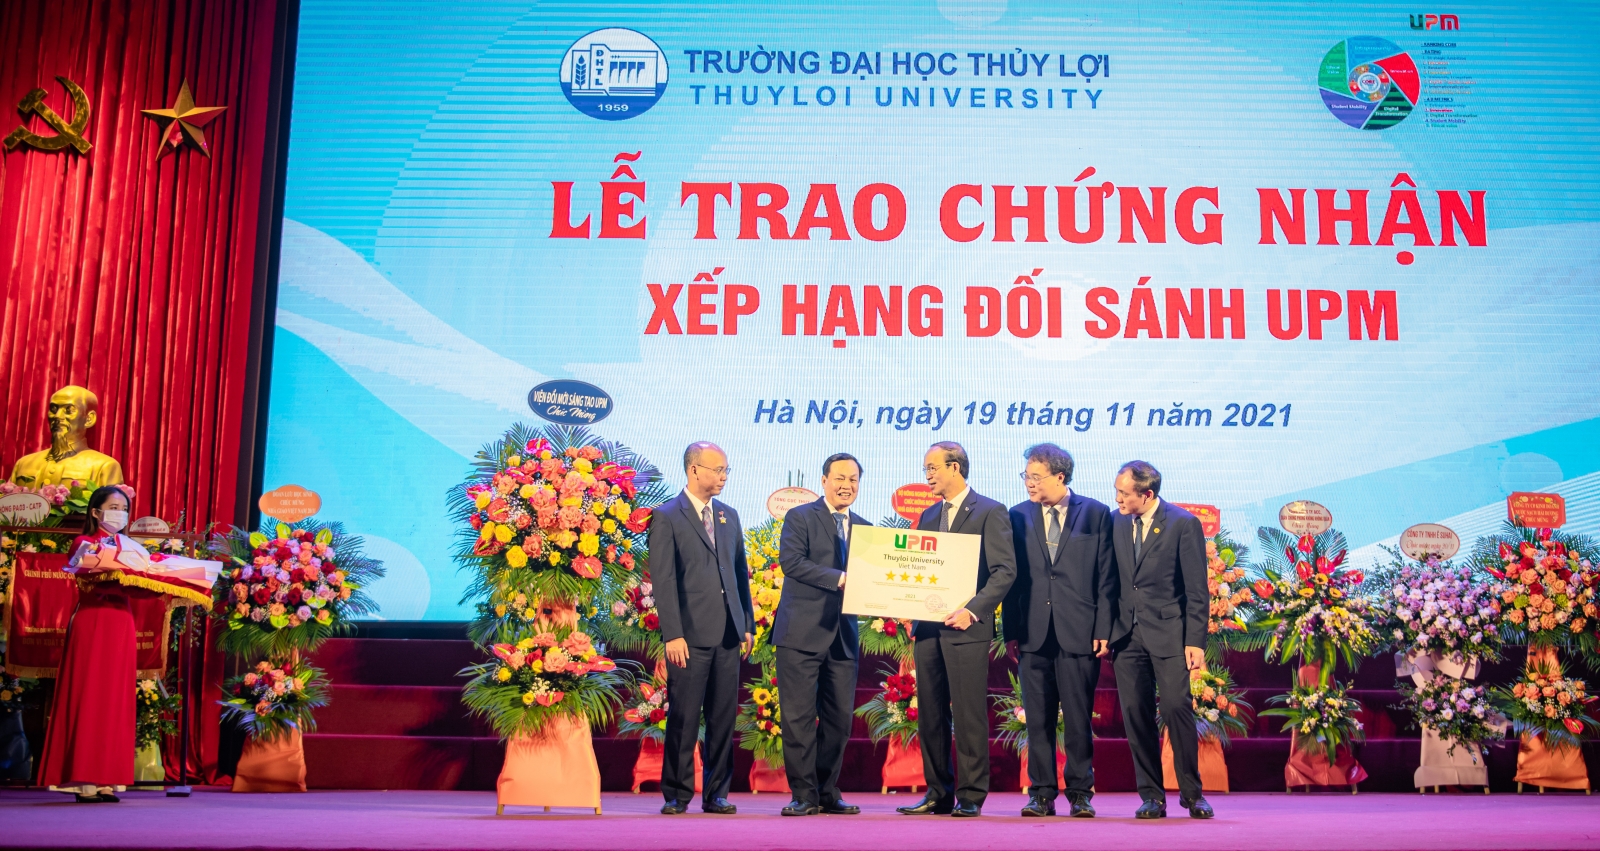 Trường Đại học Thủy lợi kỷ niệm ngày Nhà giáo Việt Nam 20/11 và đón nhận sao UPM - Ảnh minh hoạ 3